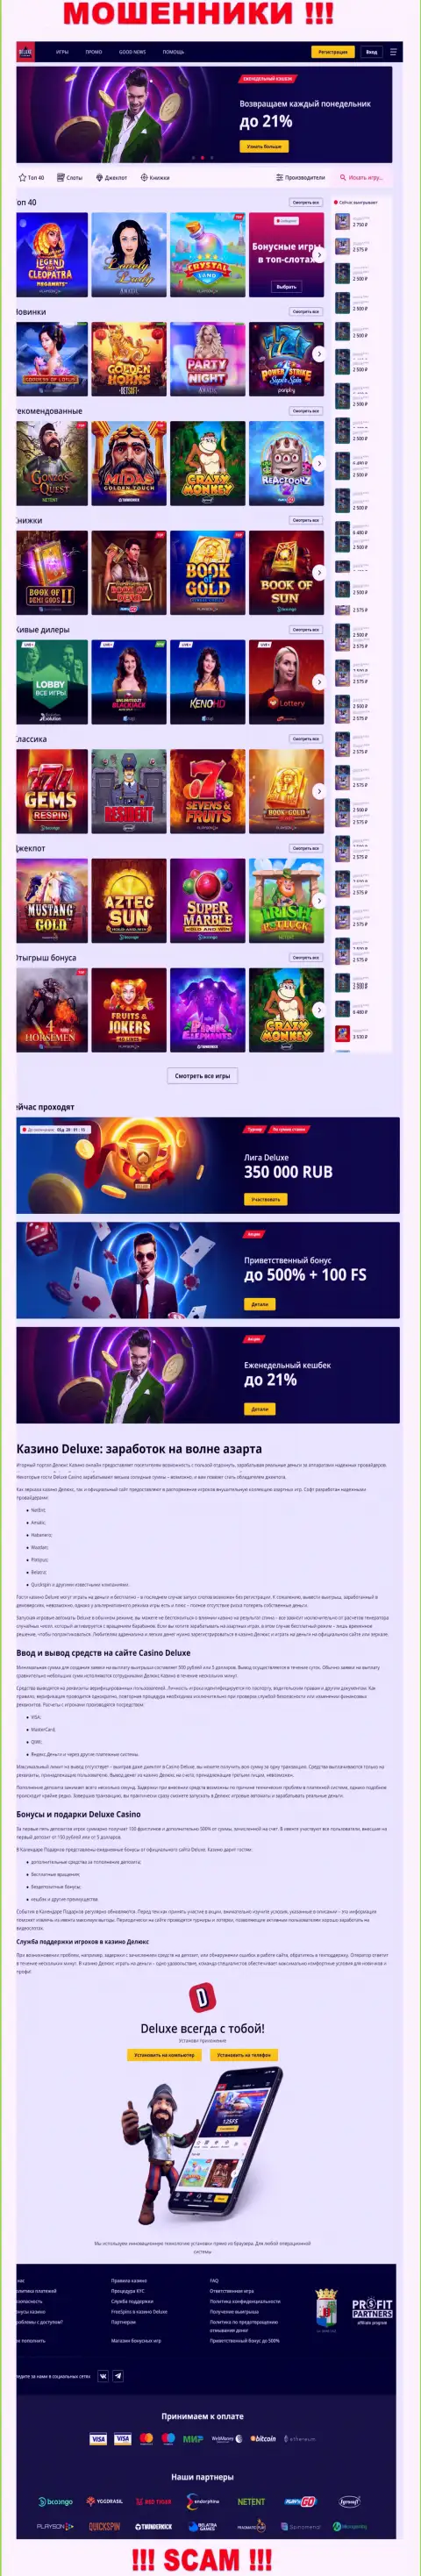 Официальная онлайн-страница конторы Deluxe-Casino Com